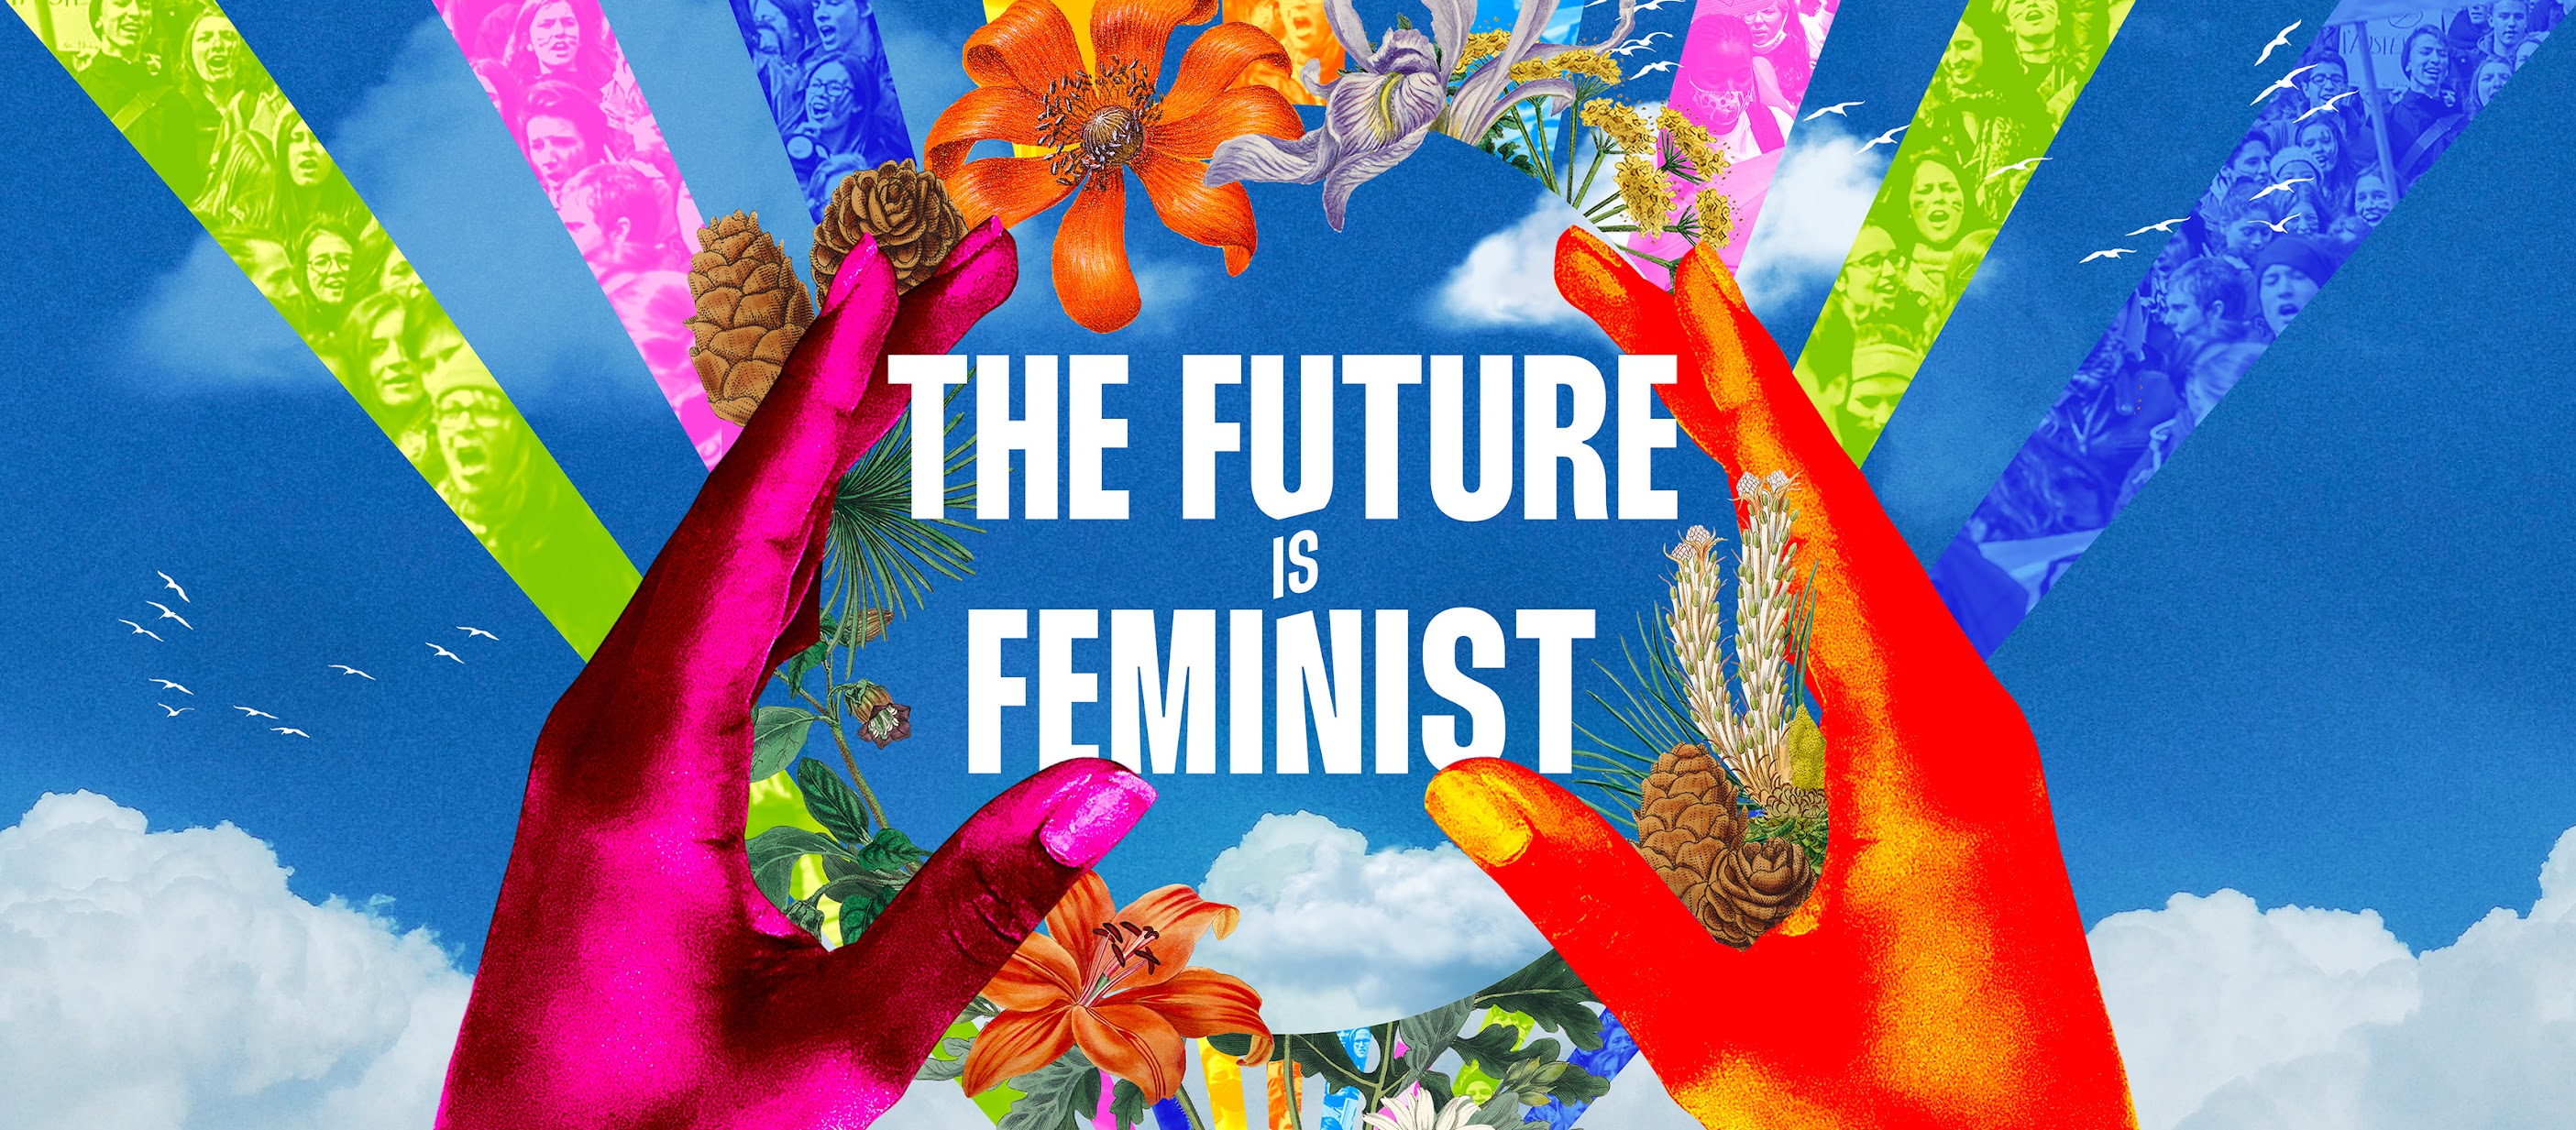 Future is feminist